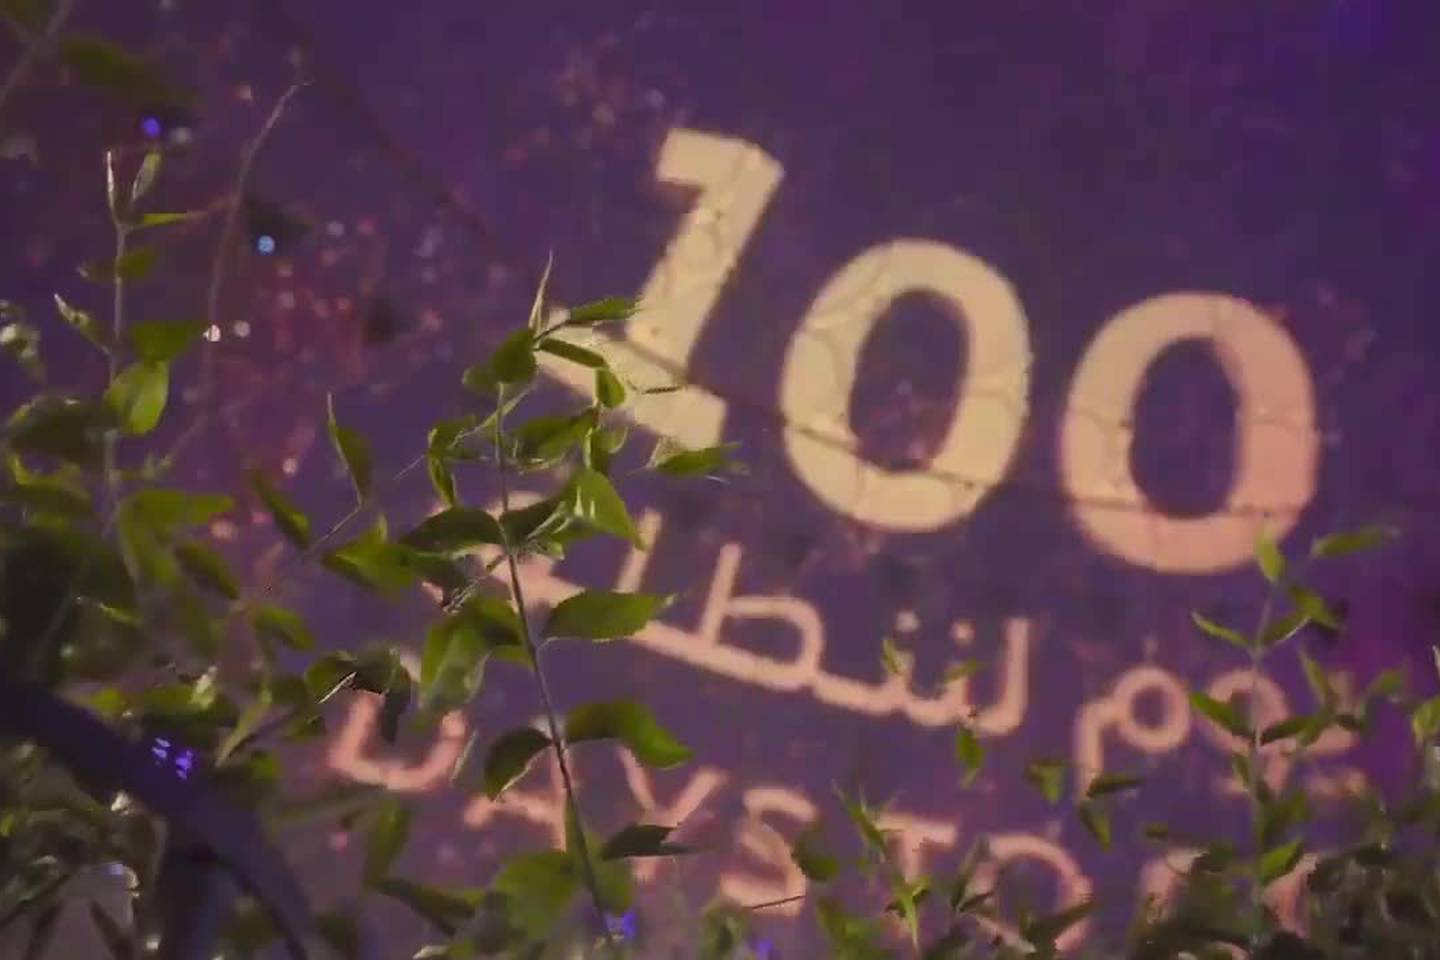 100-day countdown to Expo 2020 Dubai